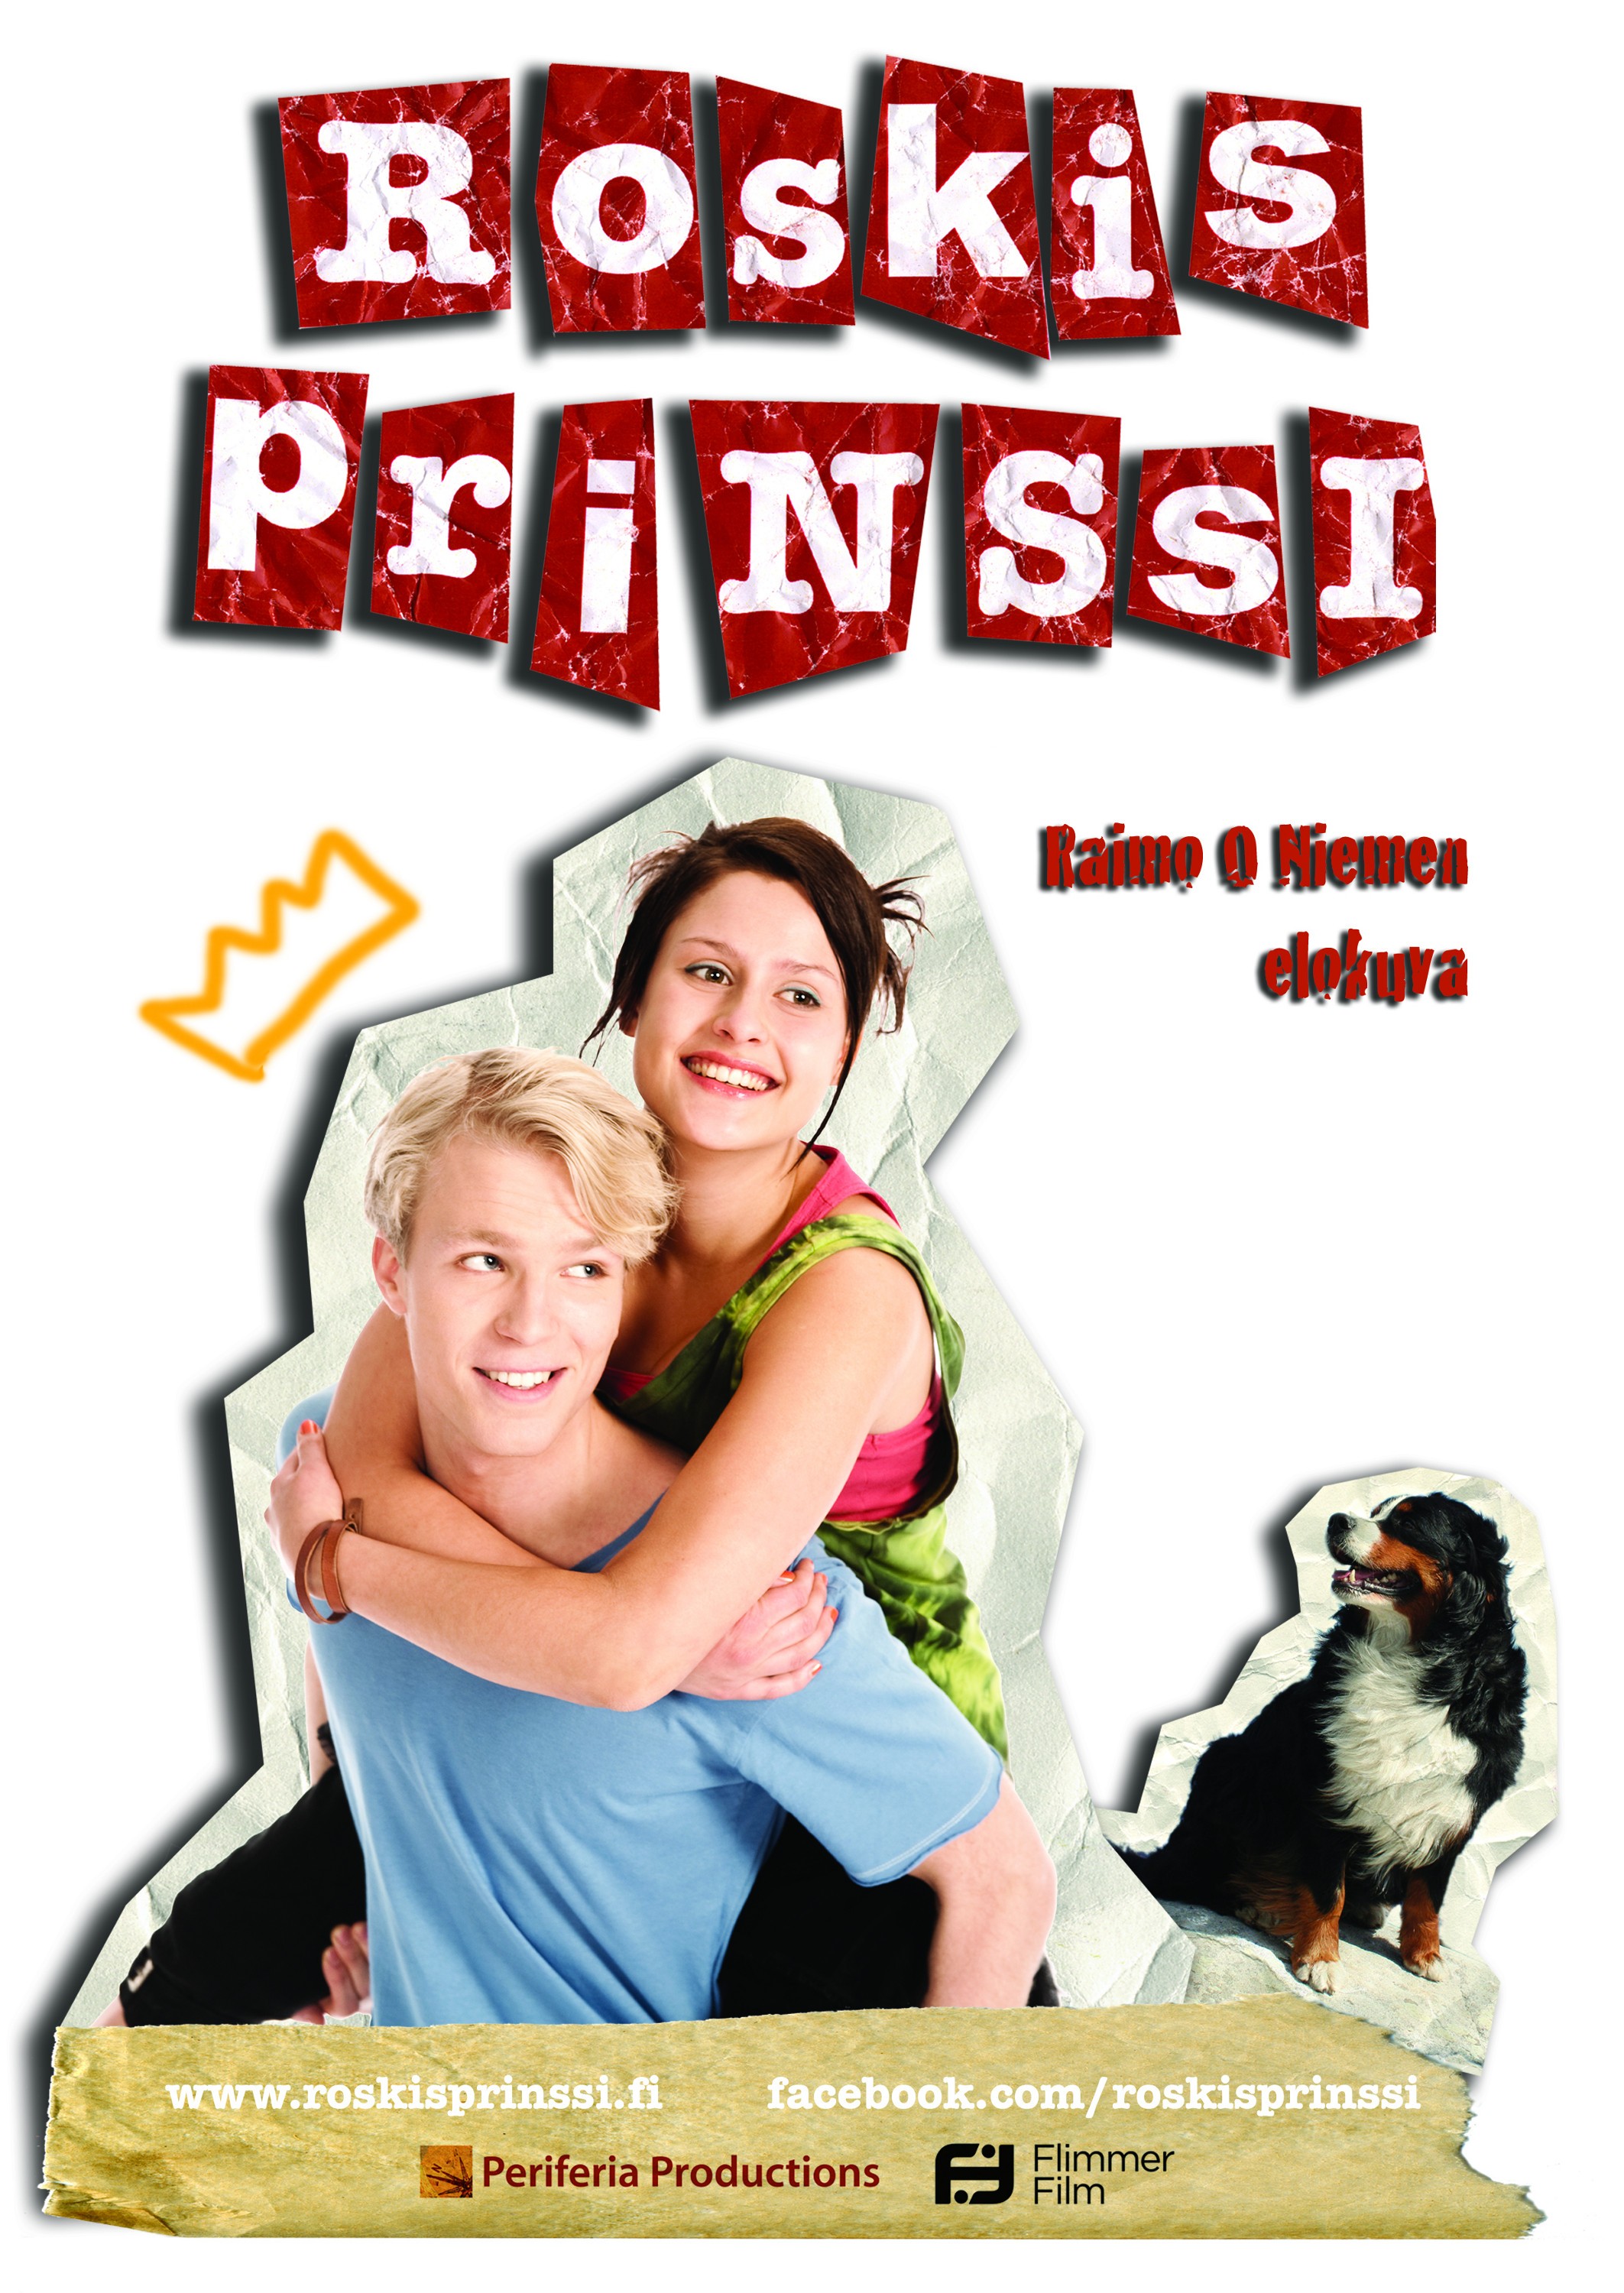 Mega Sized Movie Poster Image for Roskisprinssi 